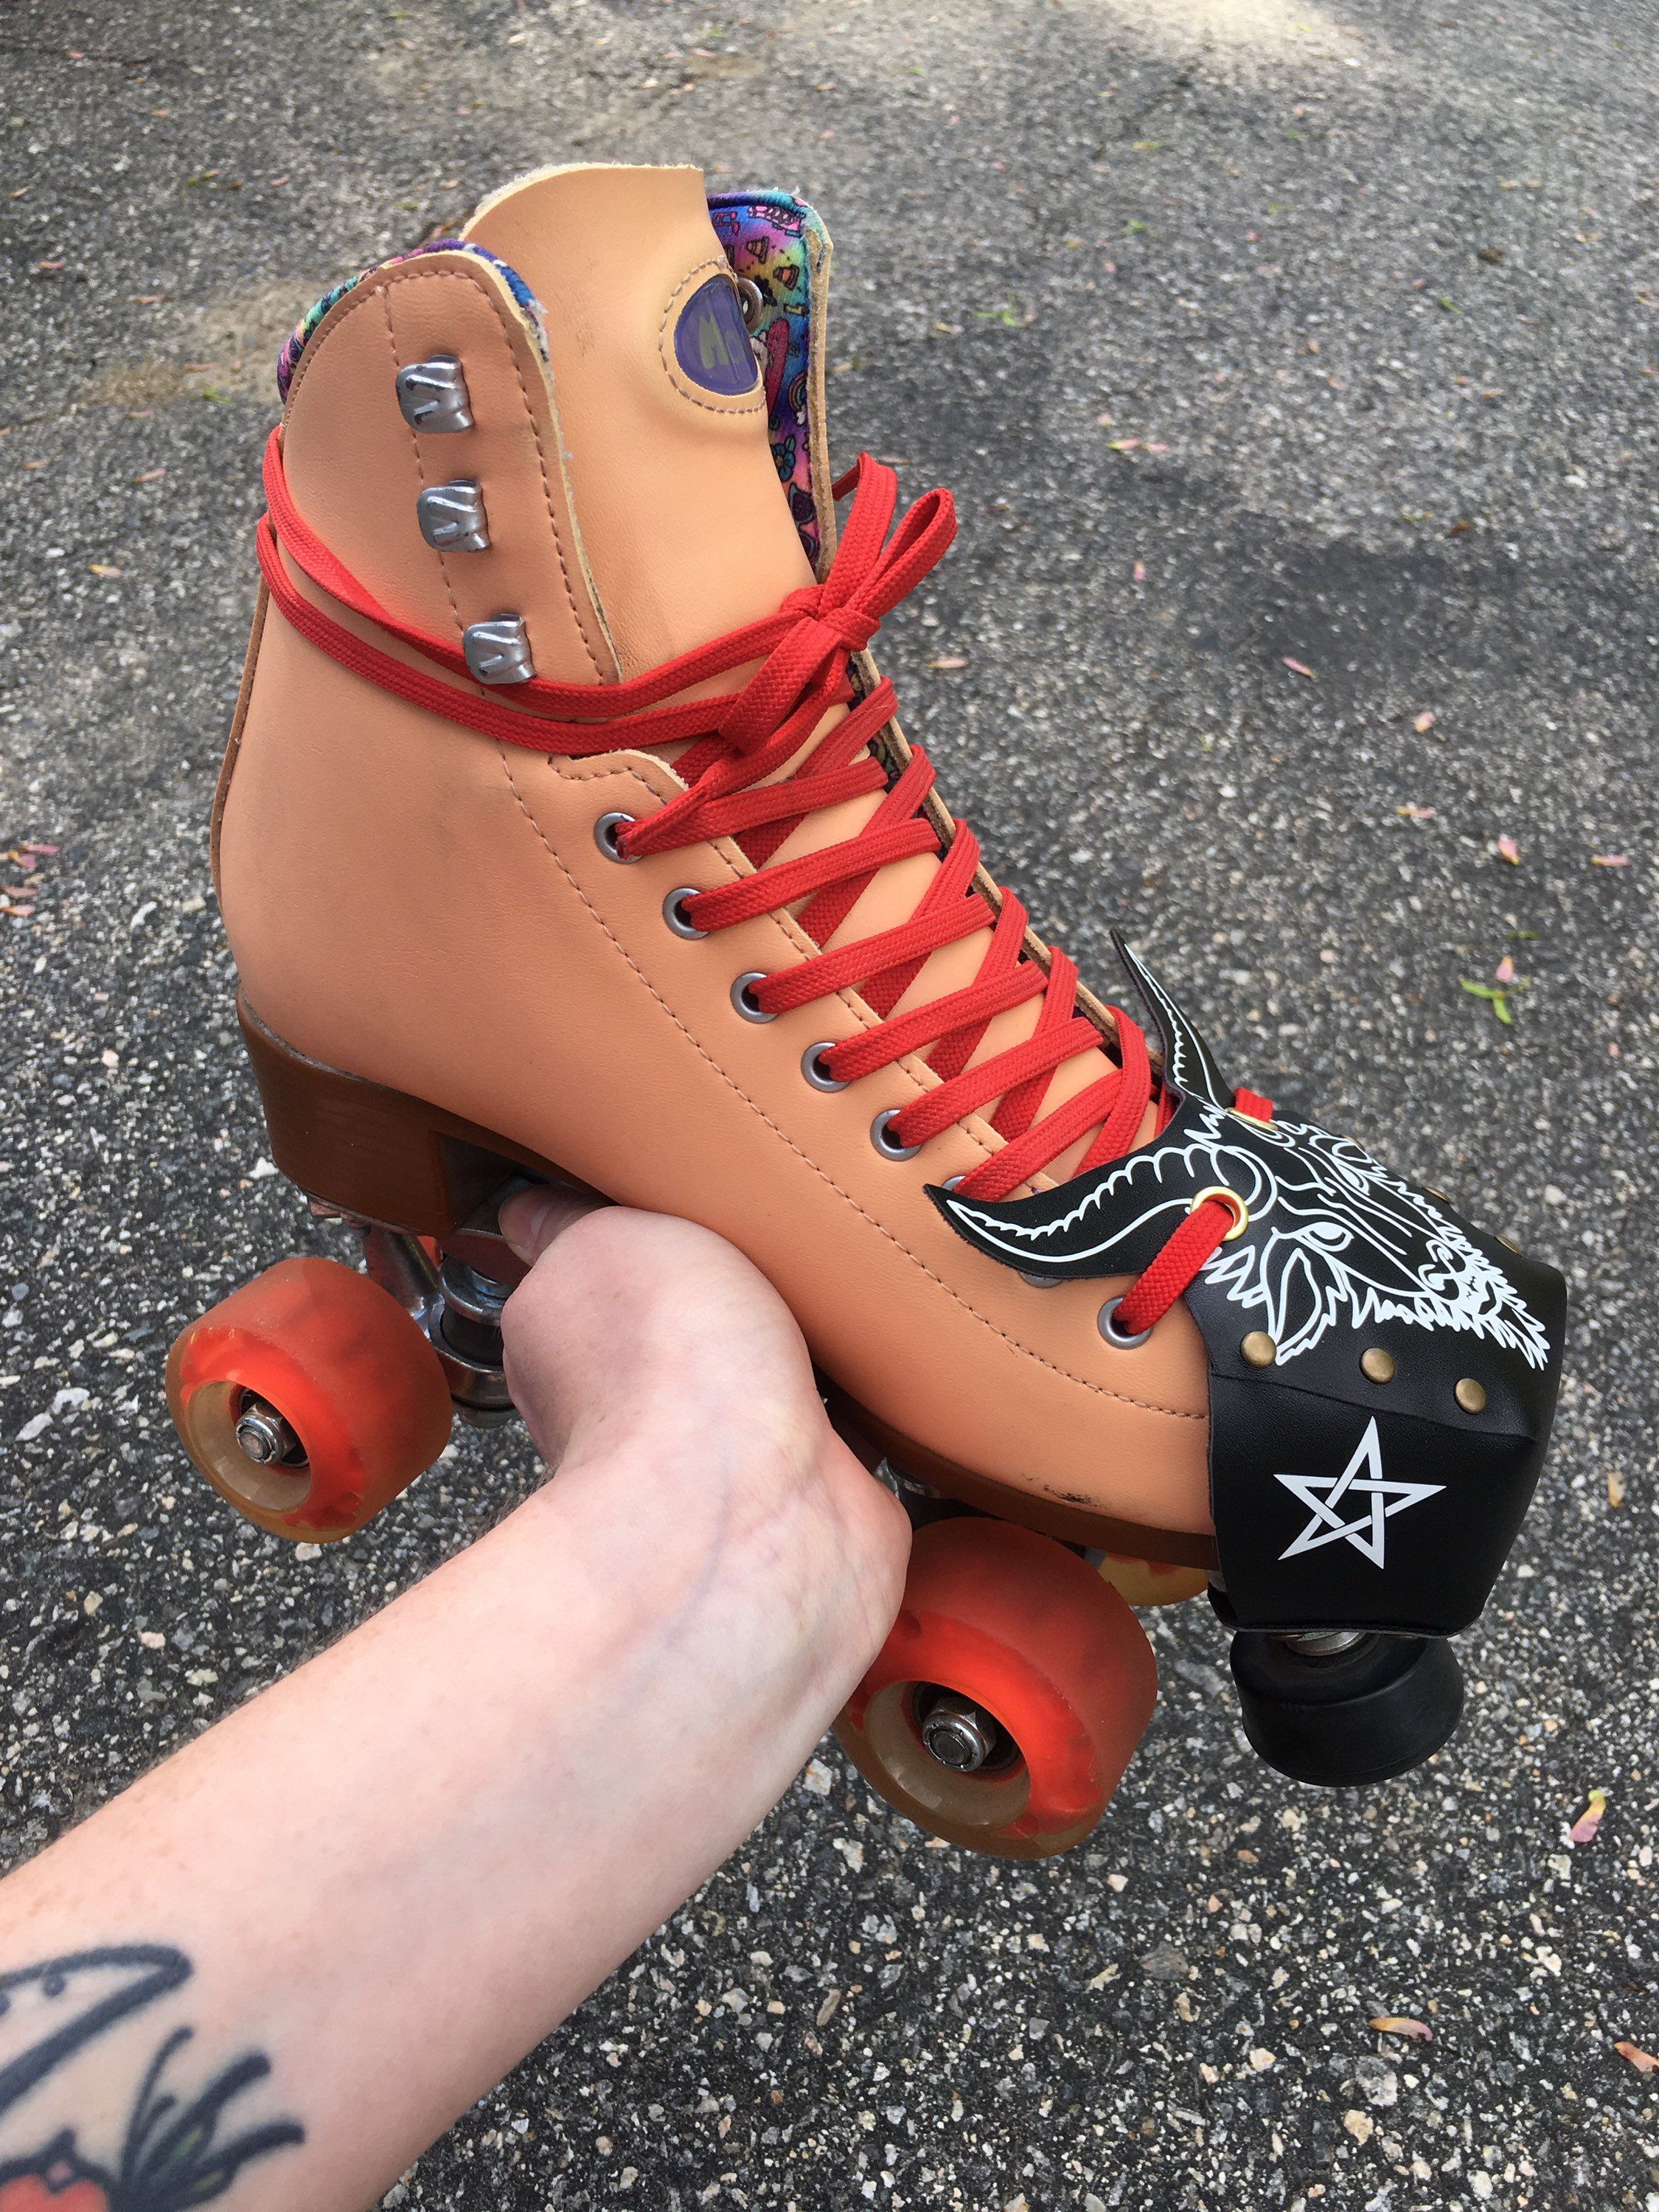 Baphomet Roller Skate Toe Guards - Etsy